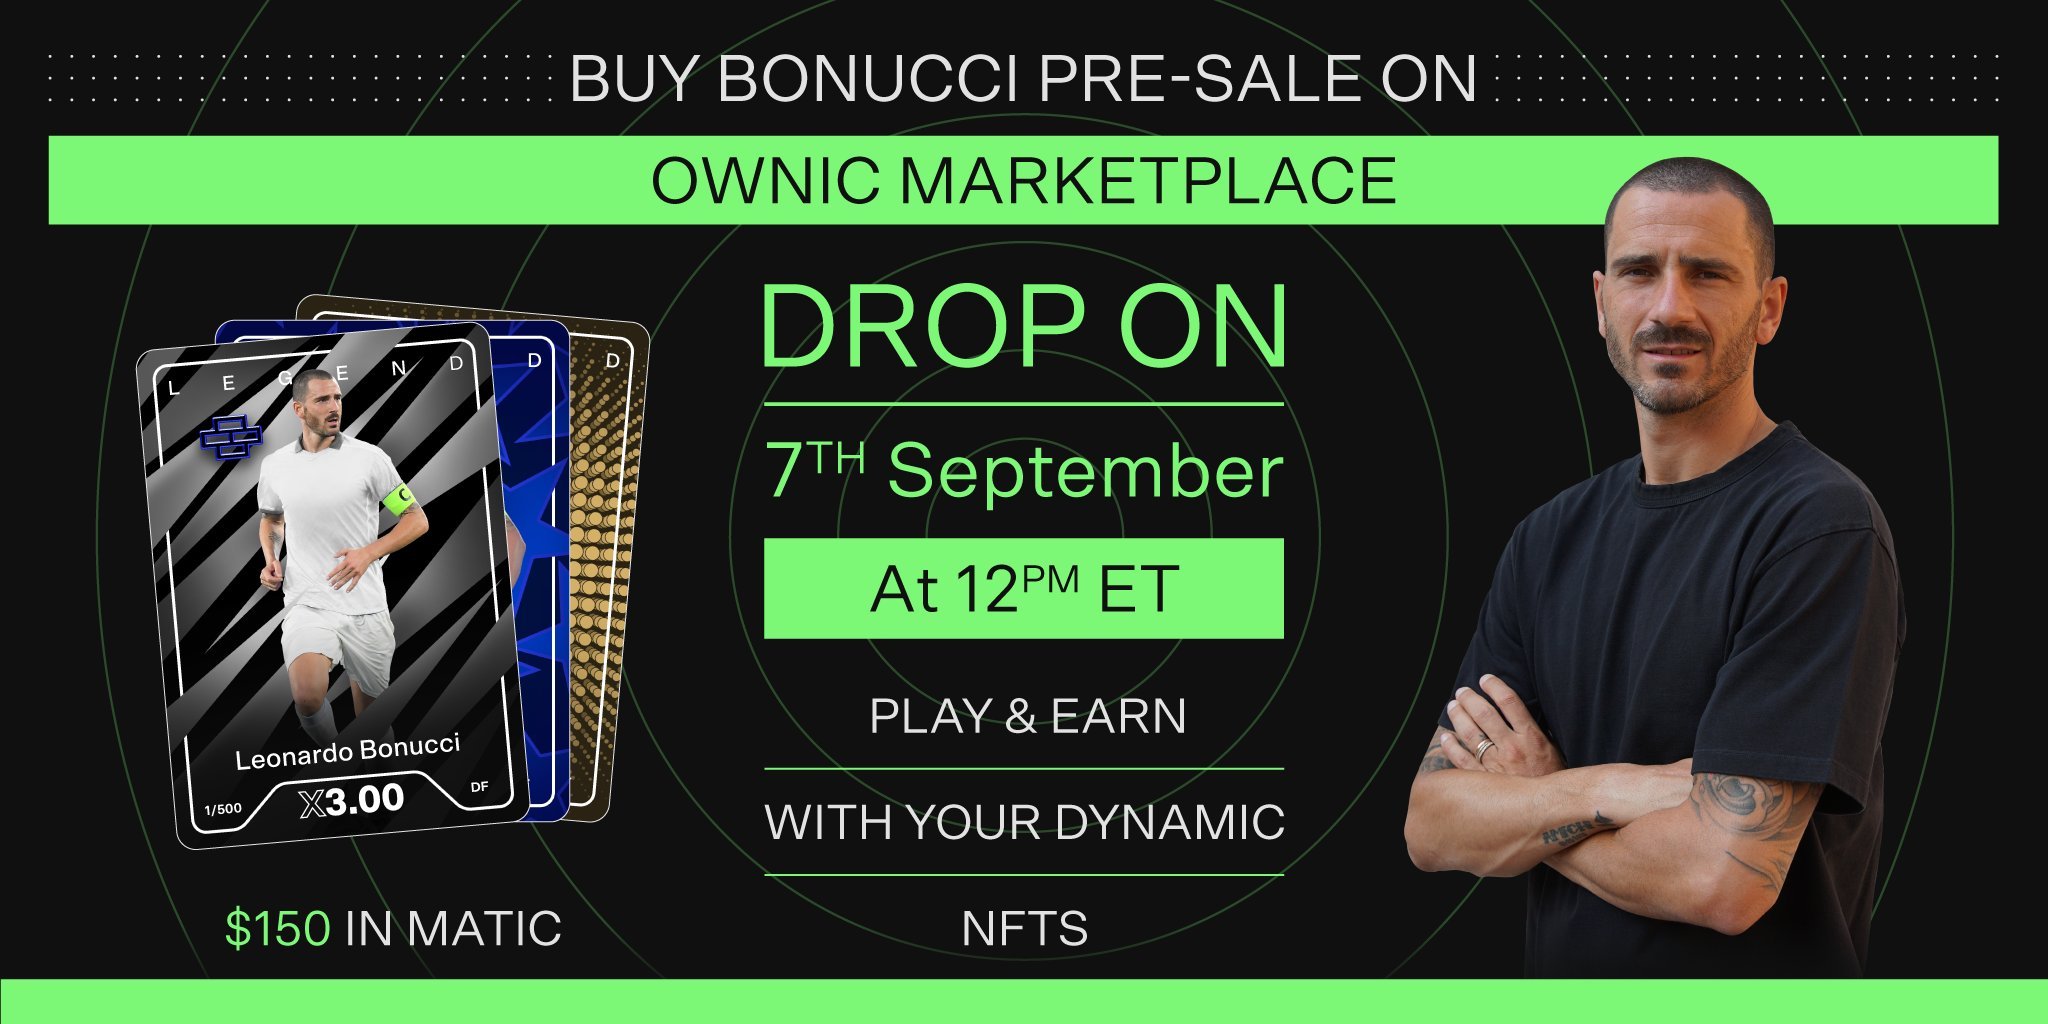 Upcoming NFT Mint of Ownic with image of Leonardo Bonucci.